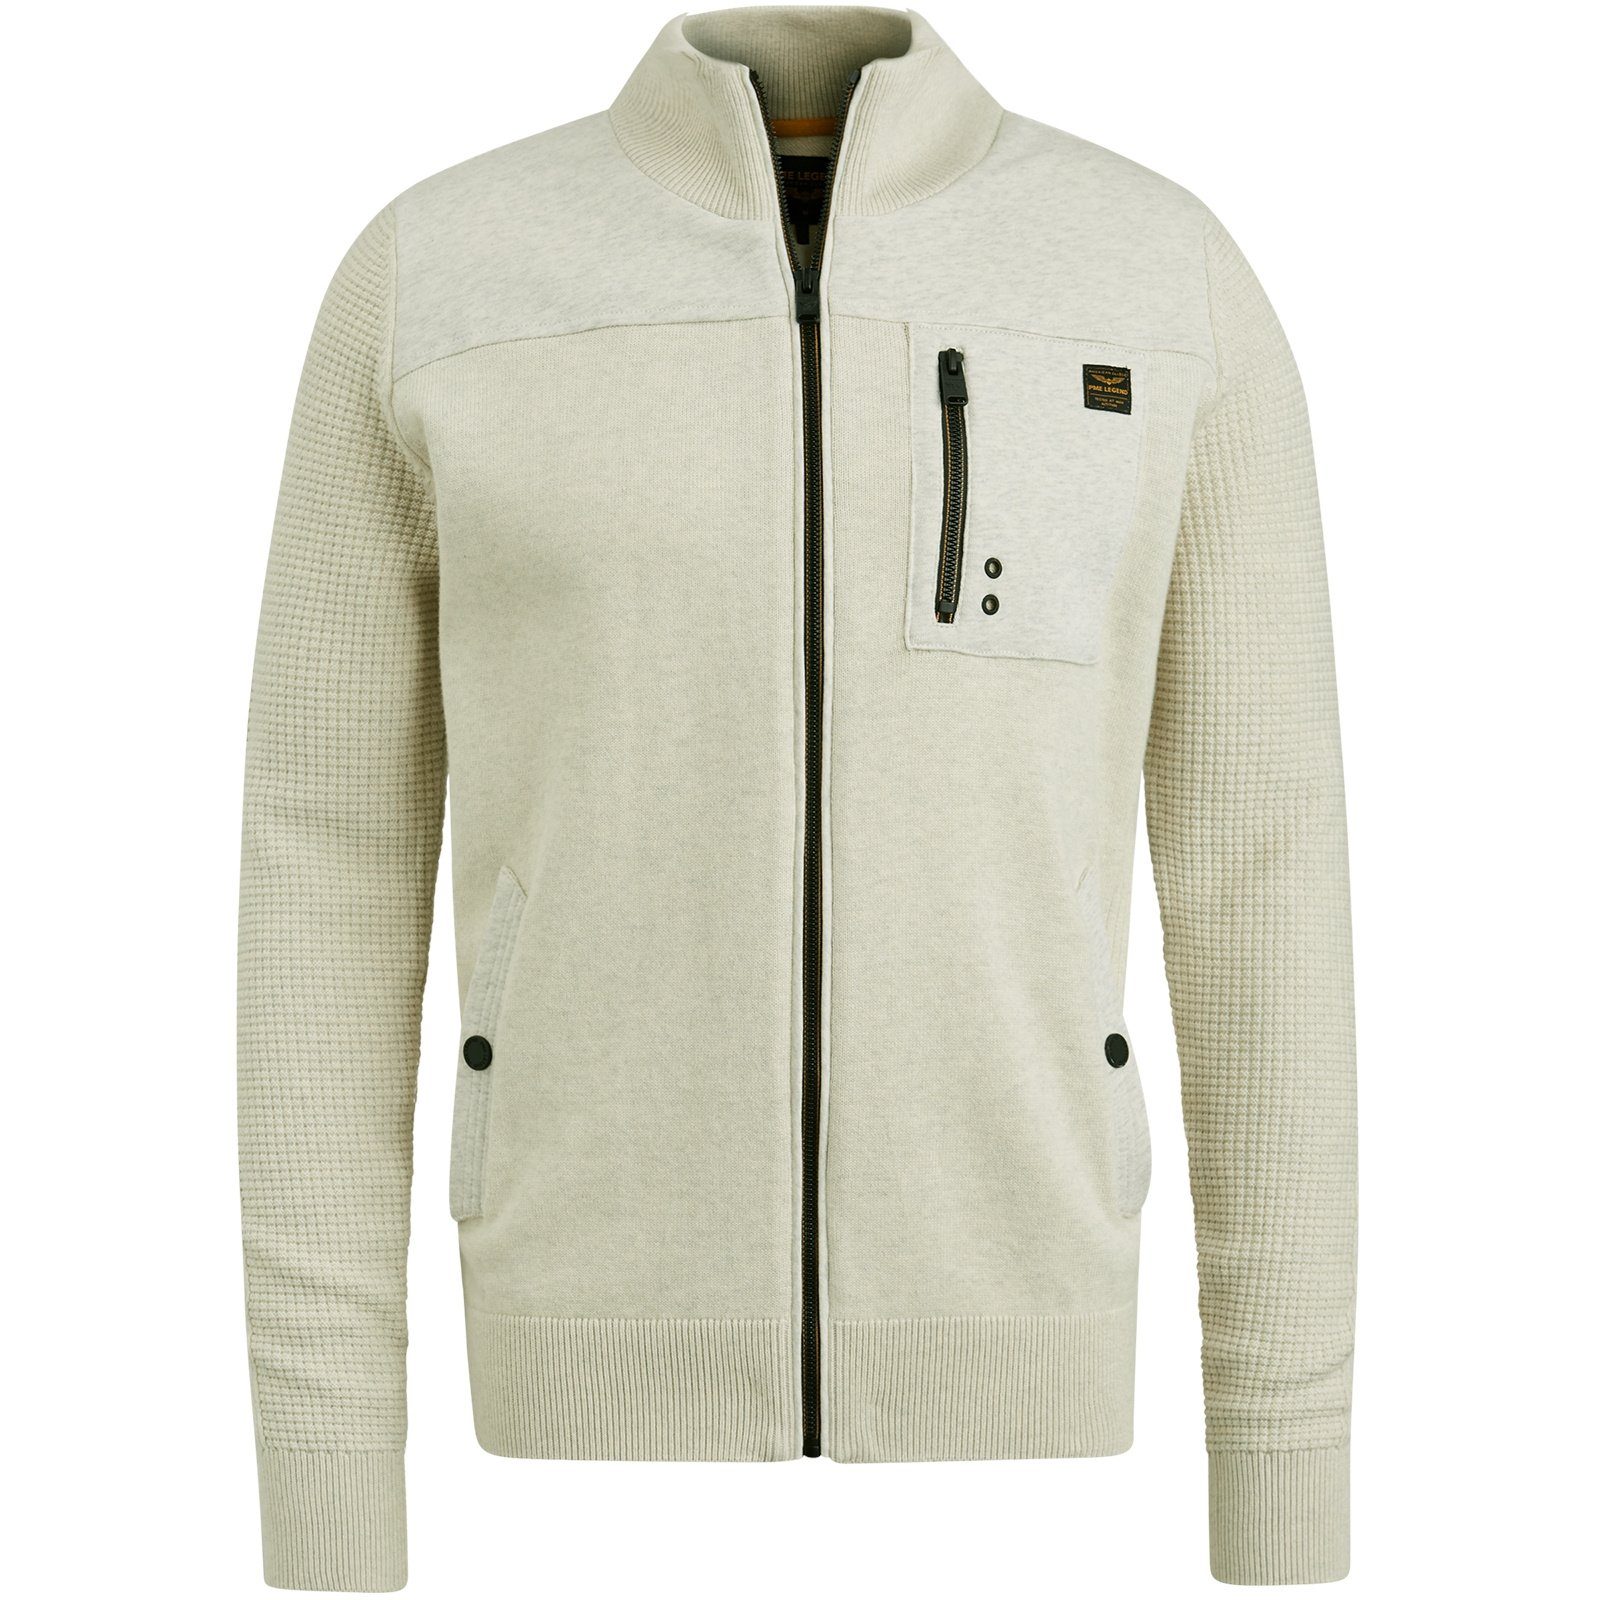 PME LEGEND Sweatjacke Zip jacket knit sweat combination bone white